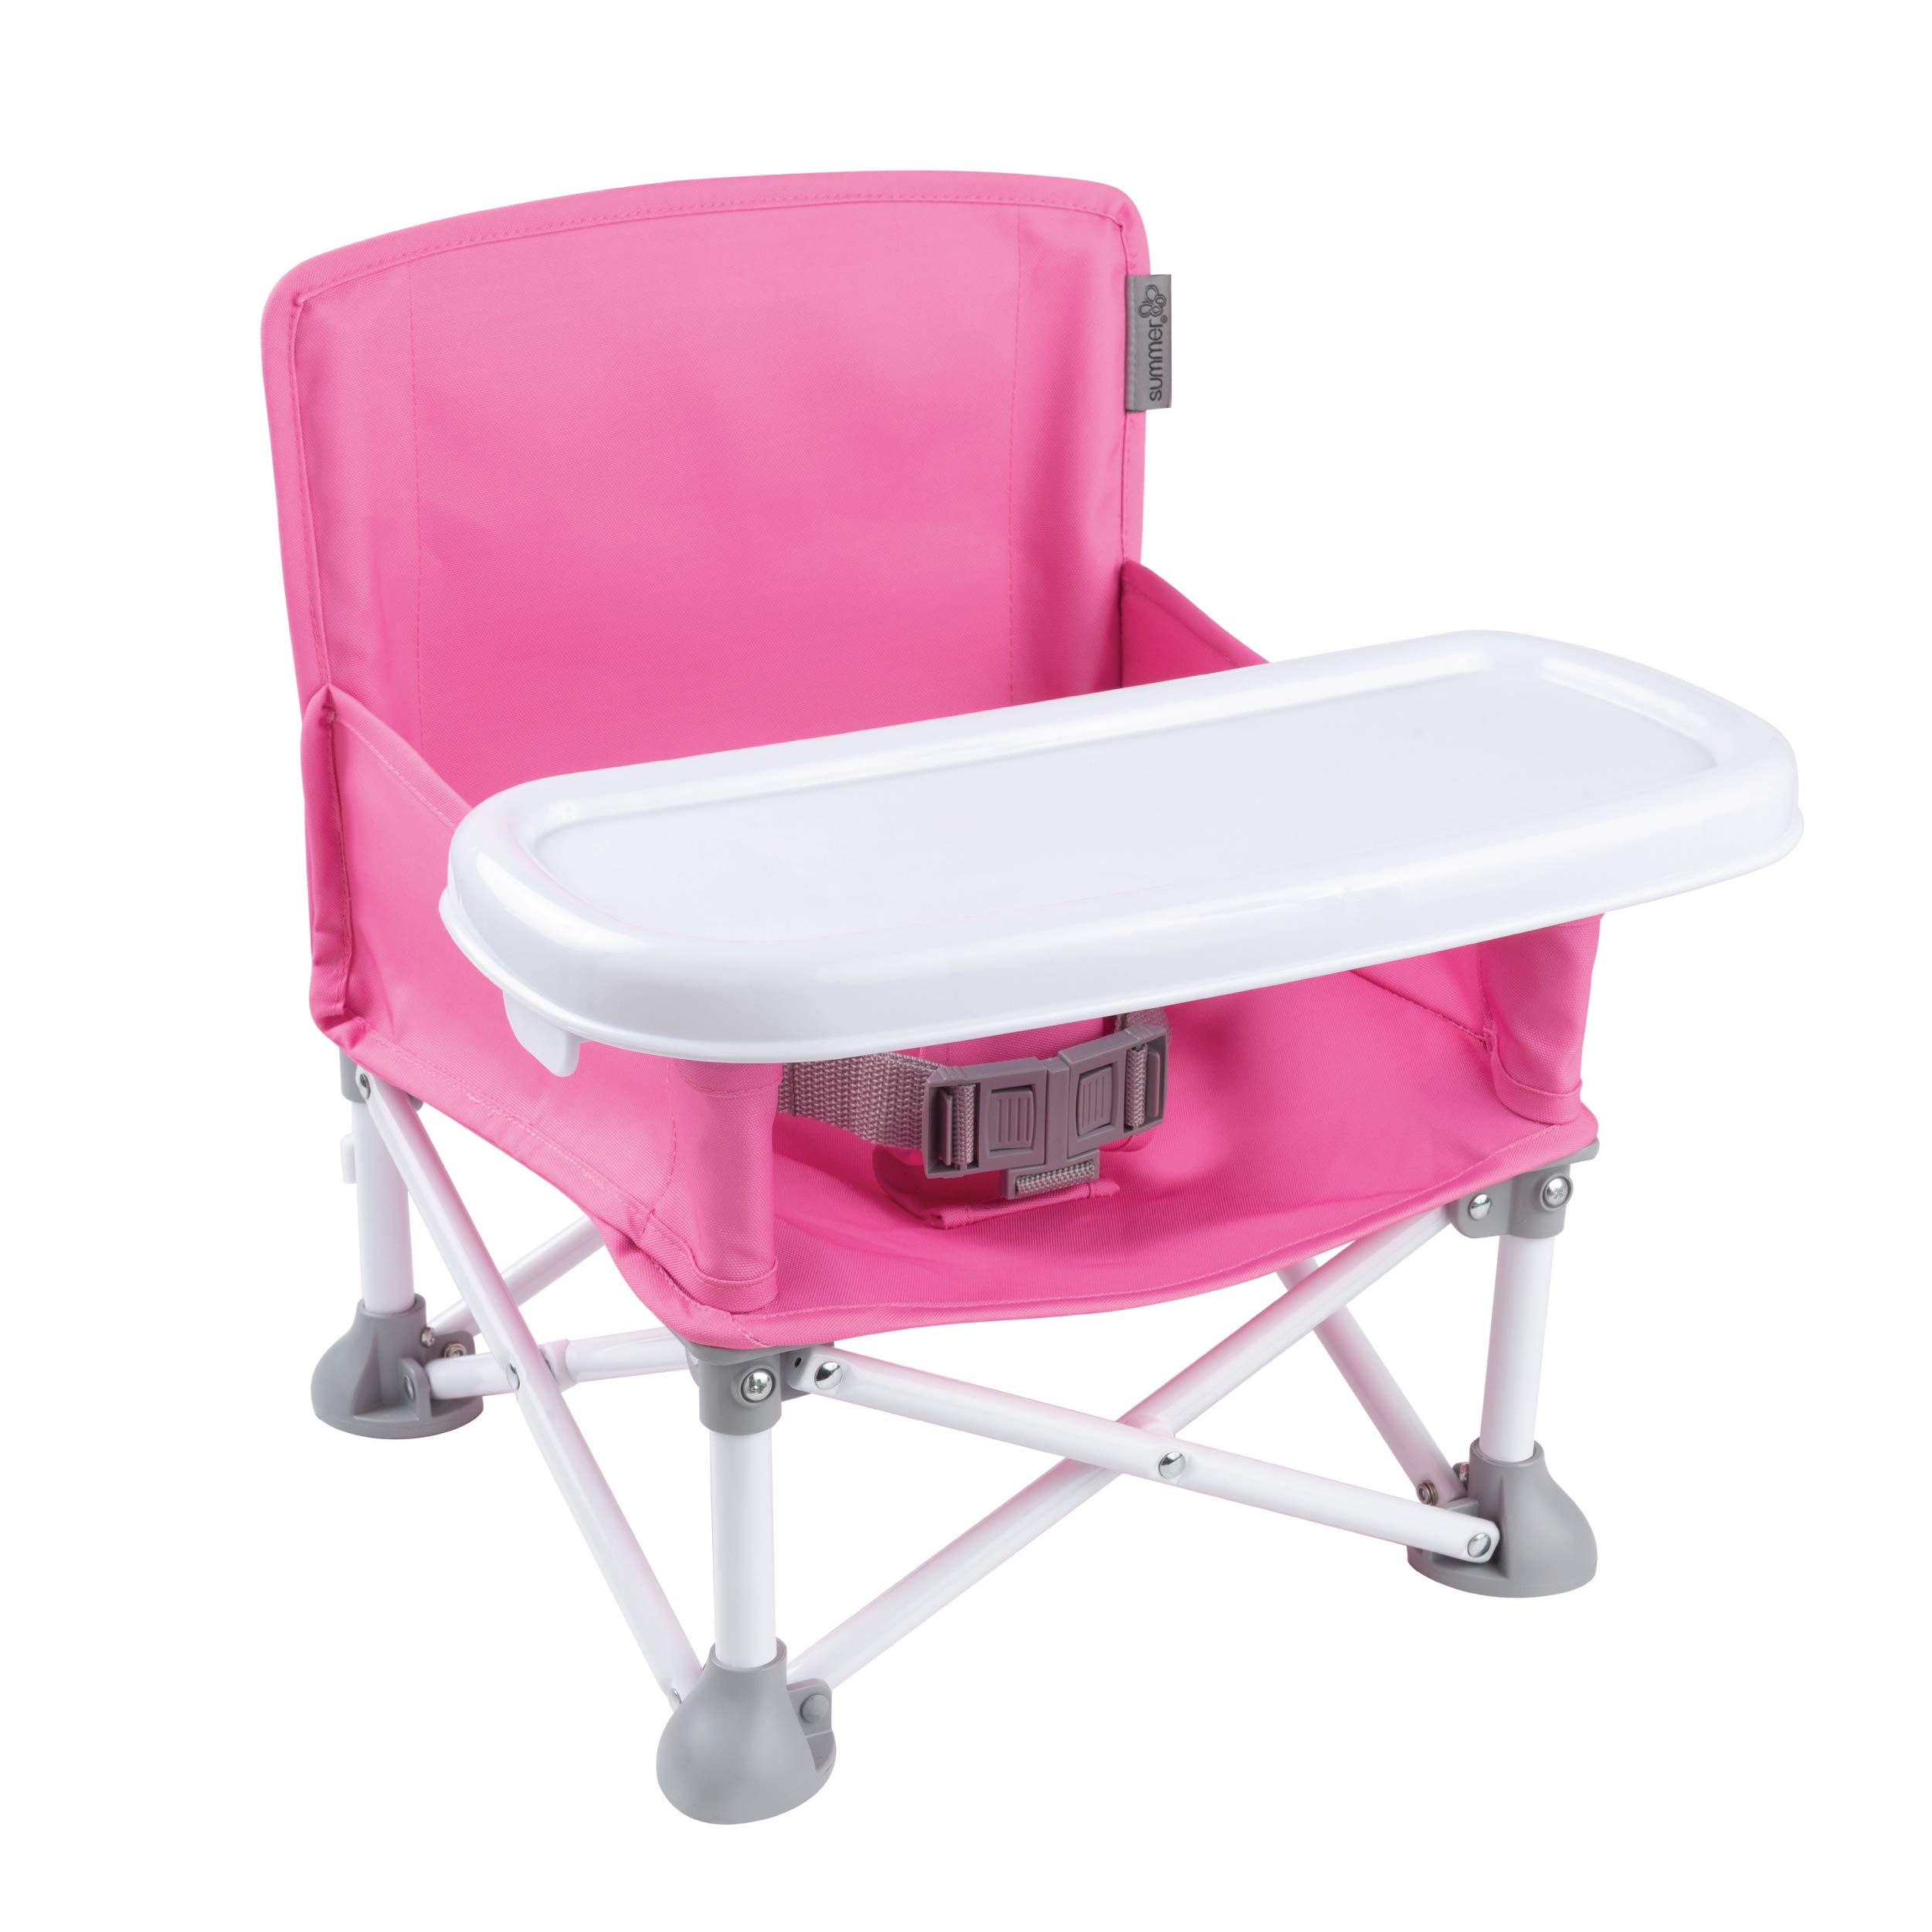 Summer Pop n Sit Tragbarer Sitzerhöhung, Pink, für den Innen- und Außenbereich, schnell, einfach und kompakt, zusammenklappbar, 38,1 x 35,1 x 38,1 cm (1 Stück)